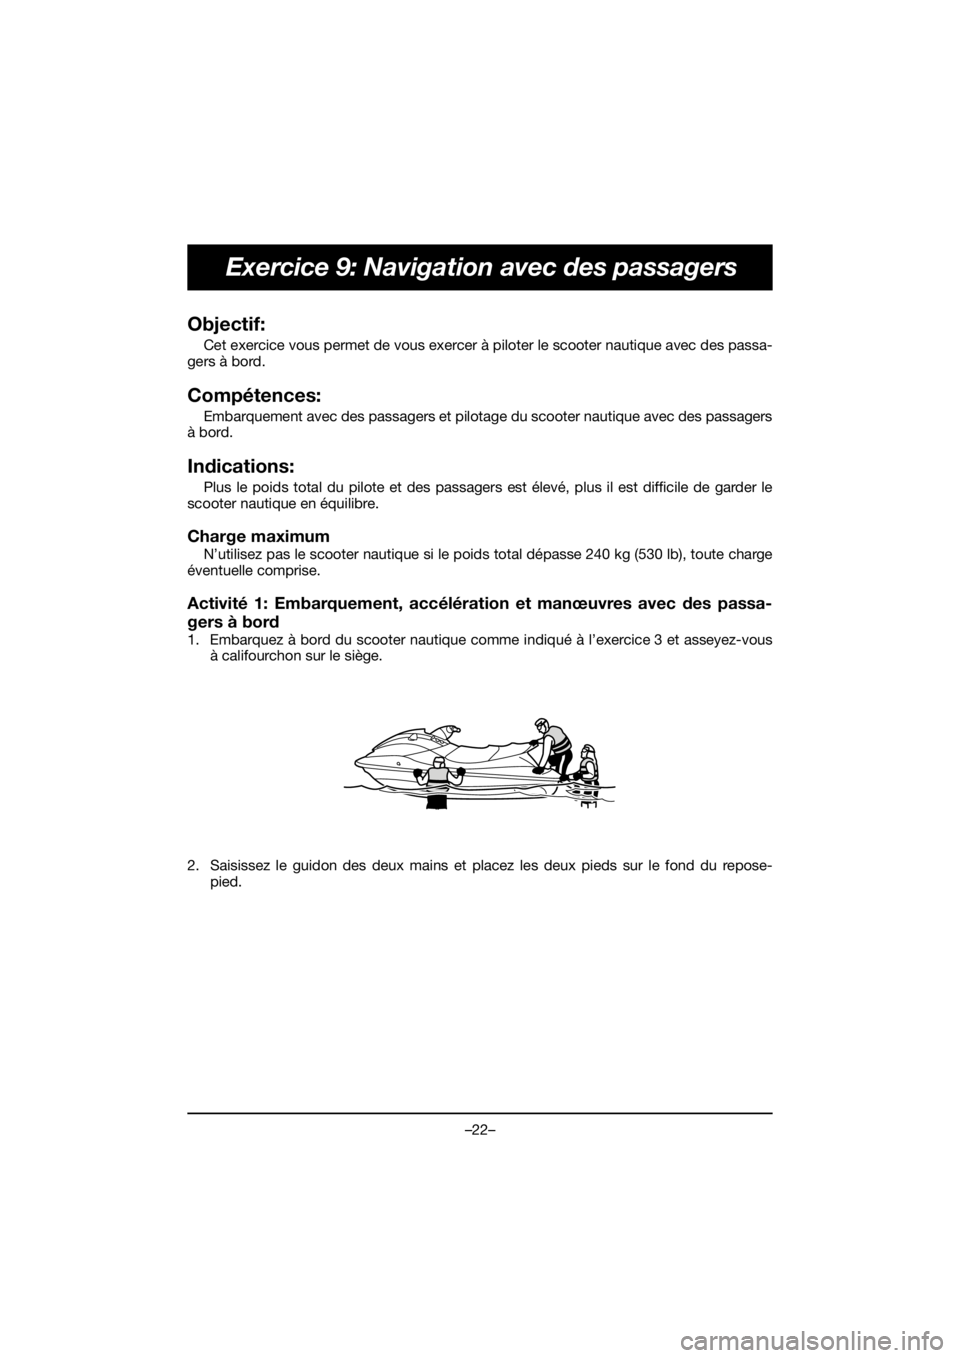 YAMAHA VX LIMITED HO 2021  Betriebsanleitungen (in German) –22–
Exercice 9: Navigation avec des passagers
Objectif: 
Cet exercice vous permet de vous exercer à piloter le scooter nautique avec des passa-
gers à bord.
Compétences: 
Embarquement avec des